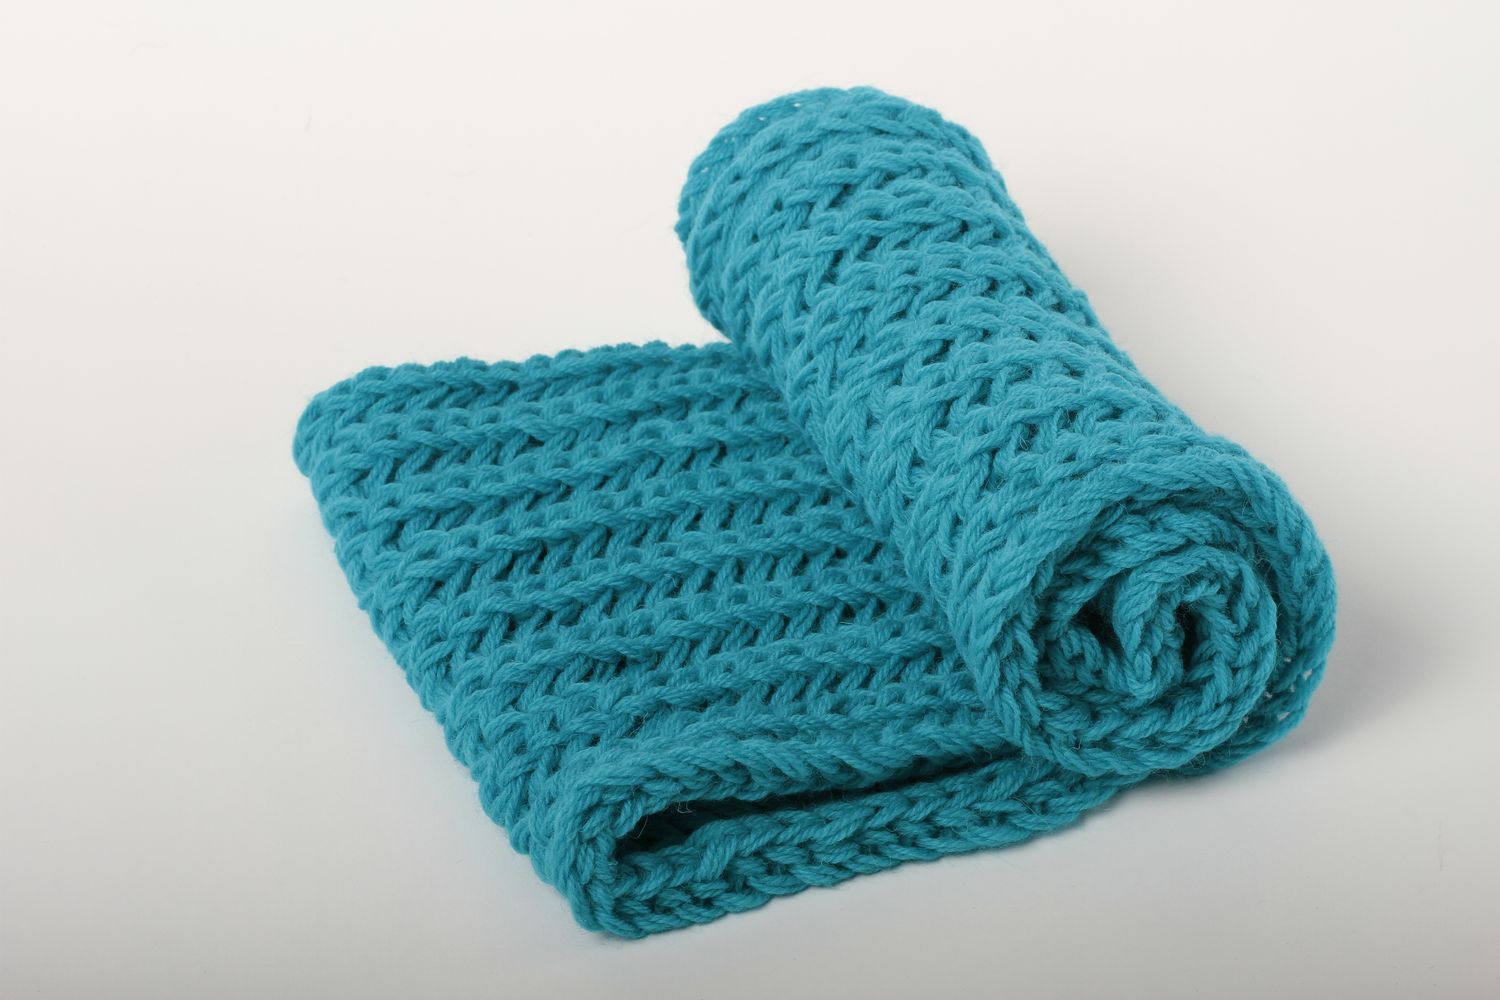 Écharpe bleue faite main Vêtement femme tricotée en laine chaude Idée cadeau photo 2